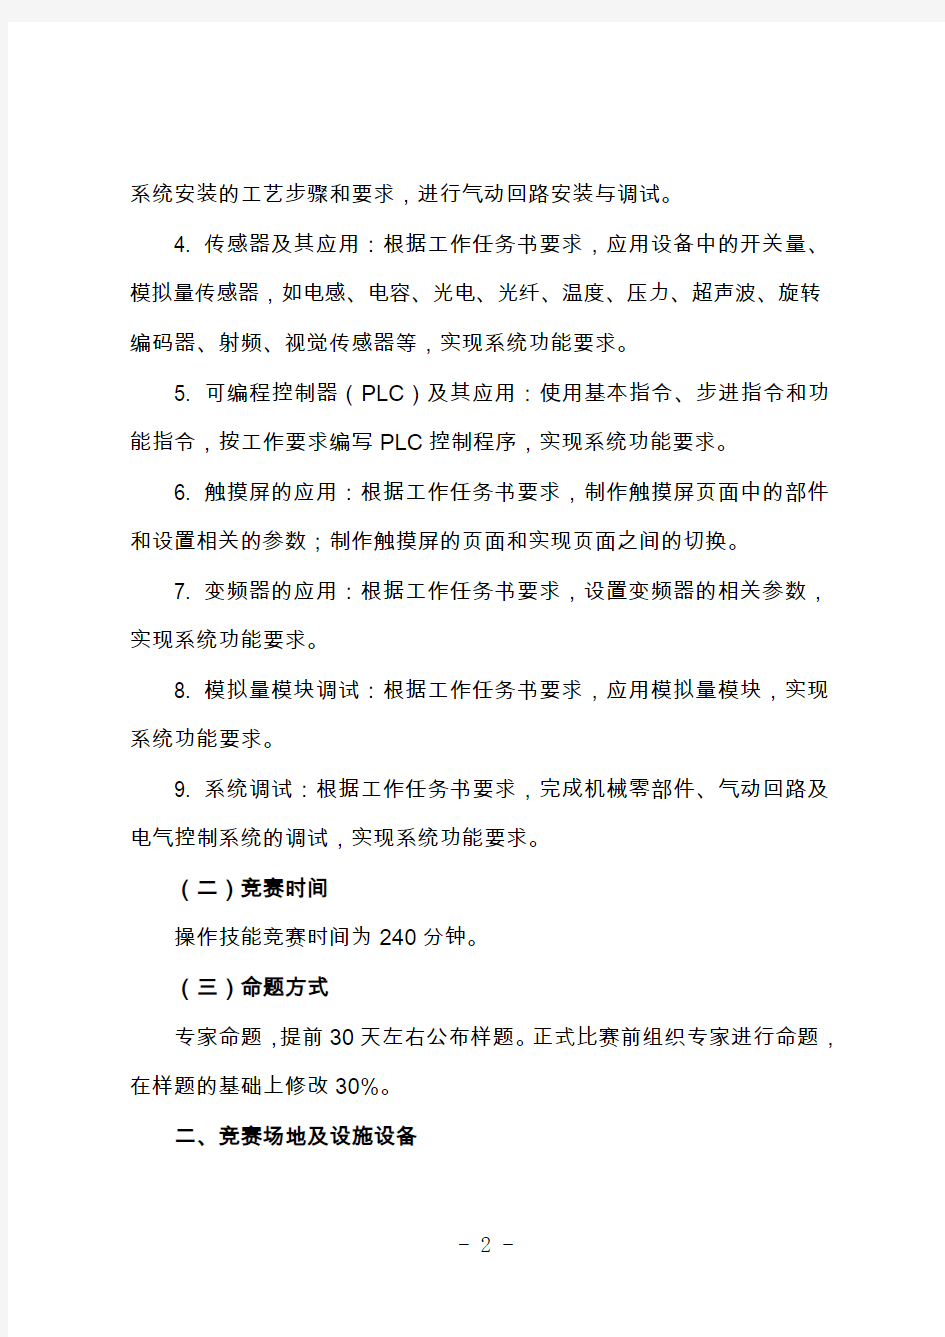 江苏省第三届技能状元大赛机电一体化项目技术文件